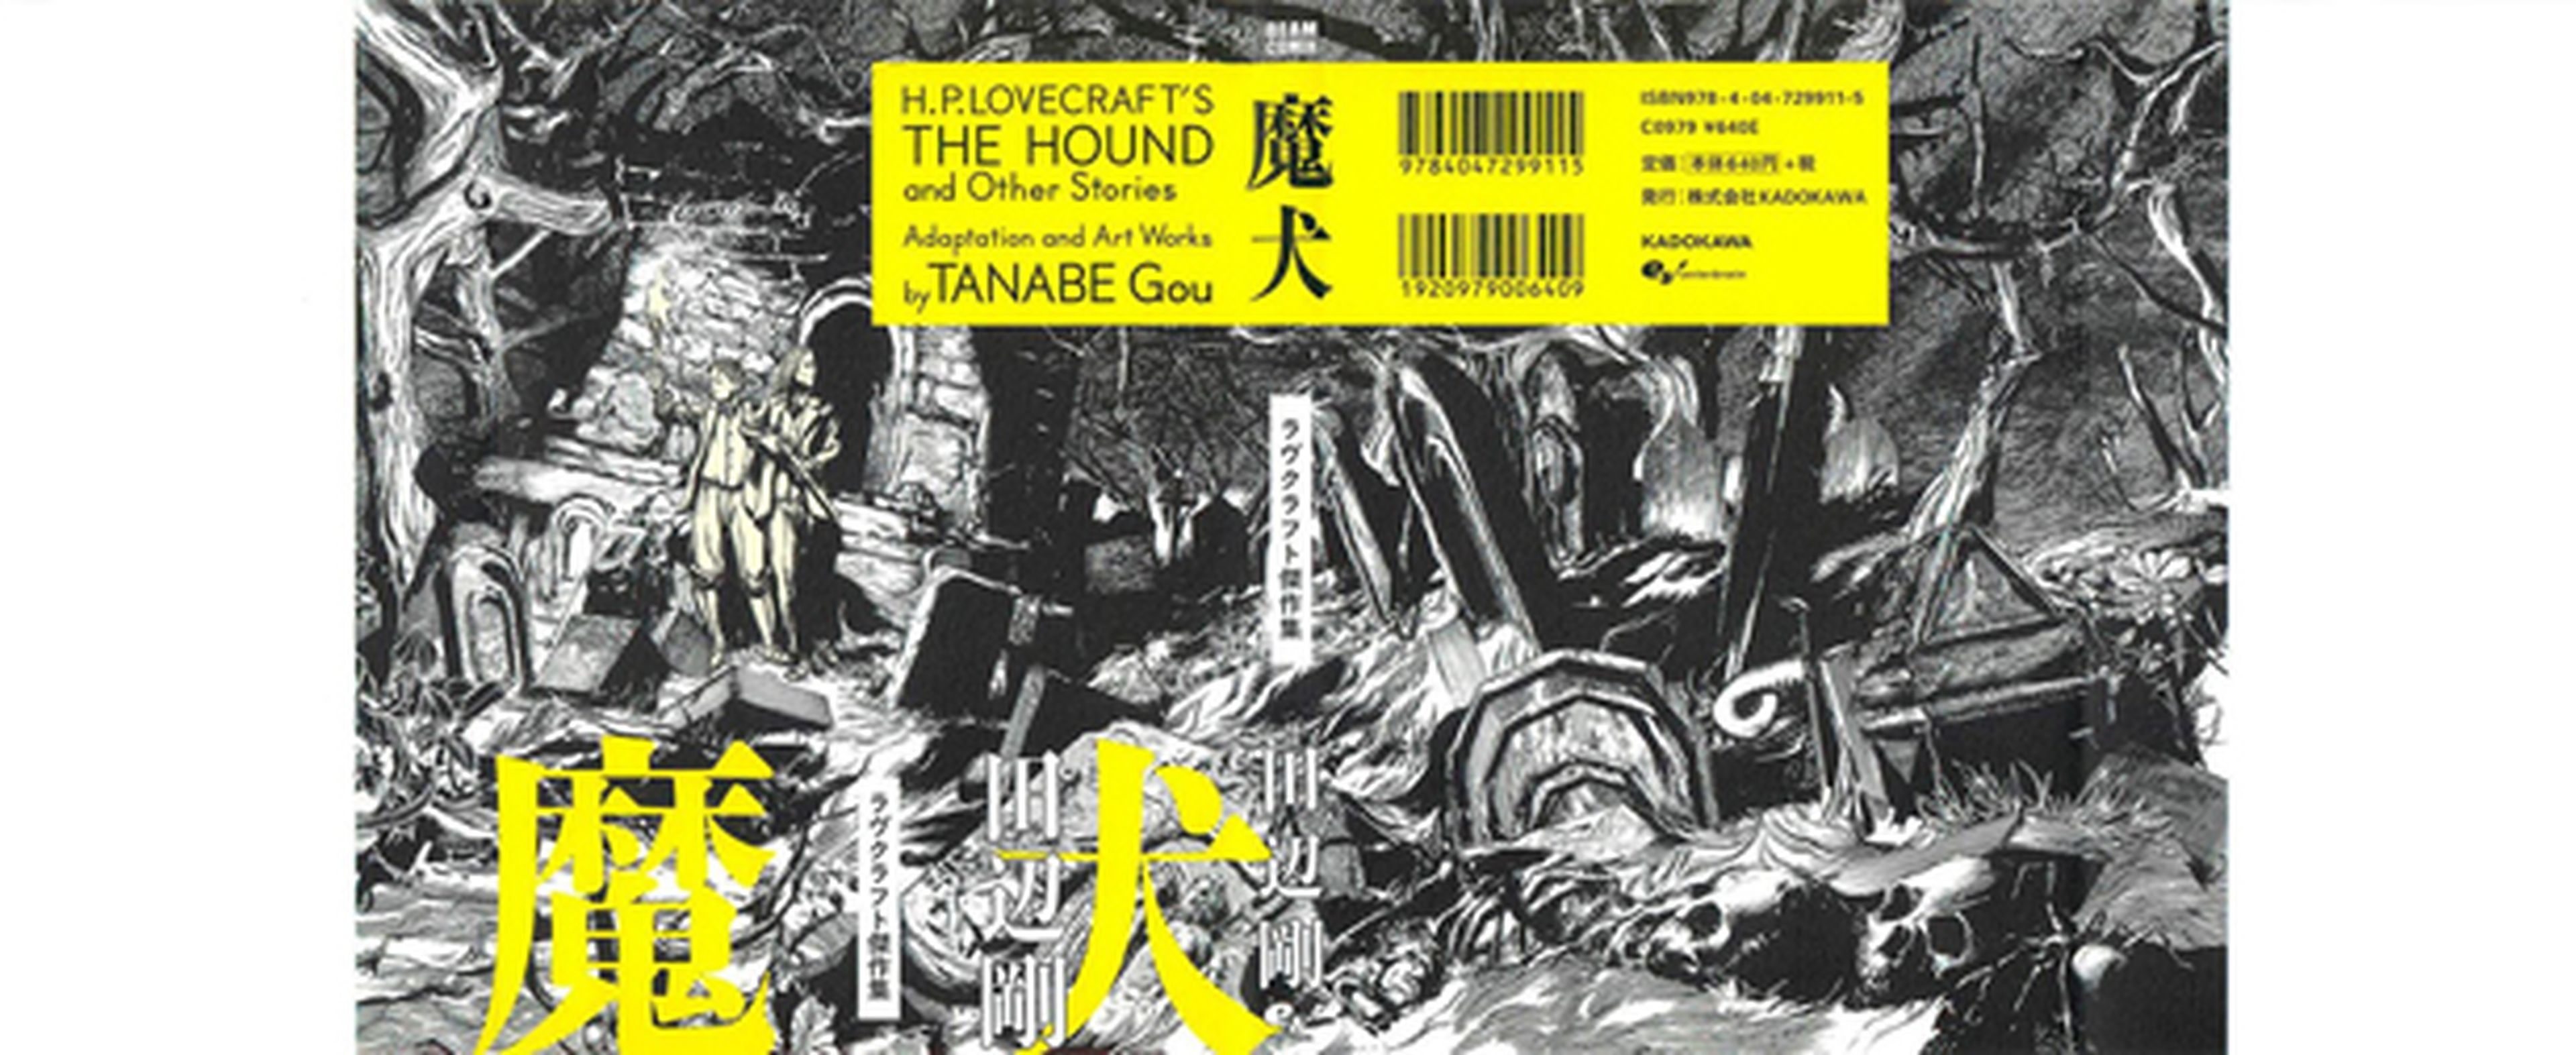 El manga El Sabueso y otras Historias de H.P. Lovecraft, en julio